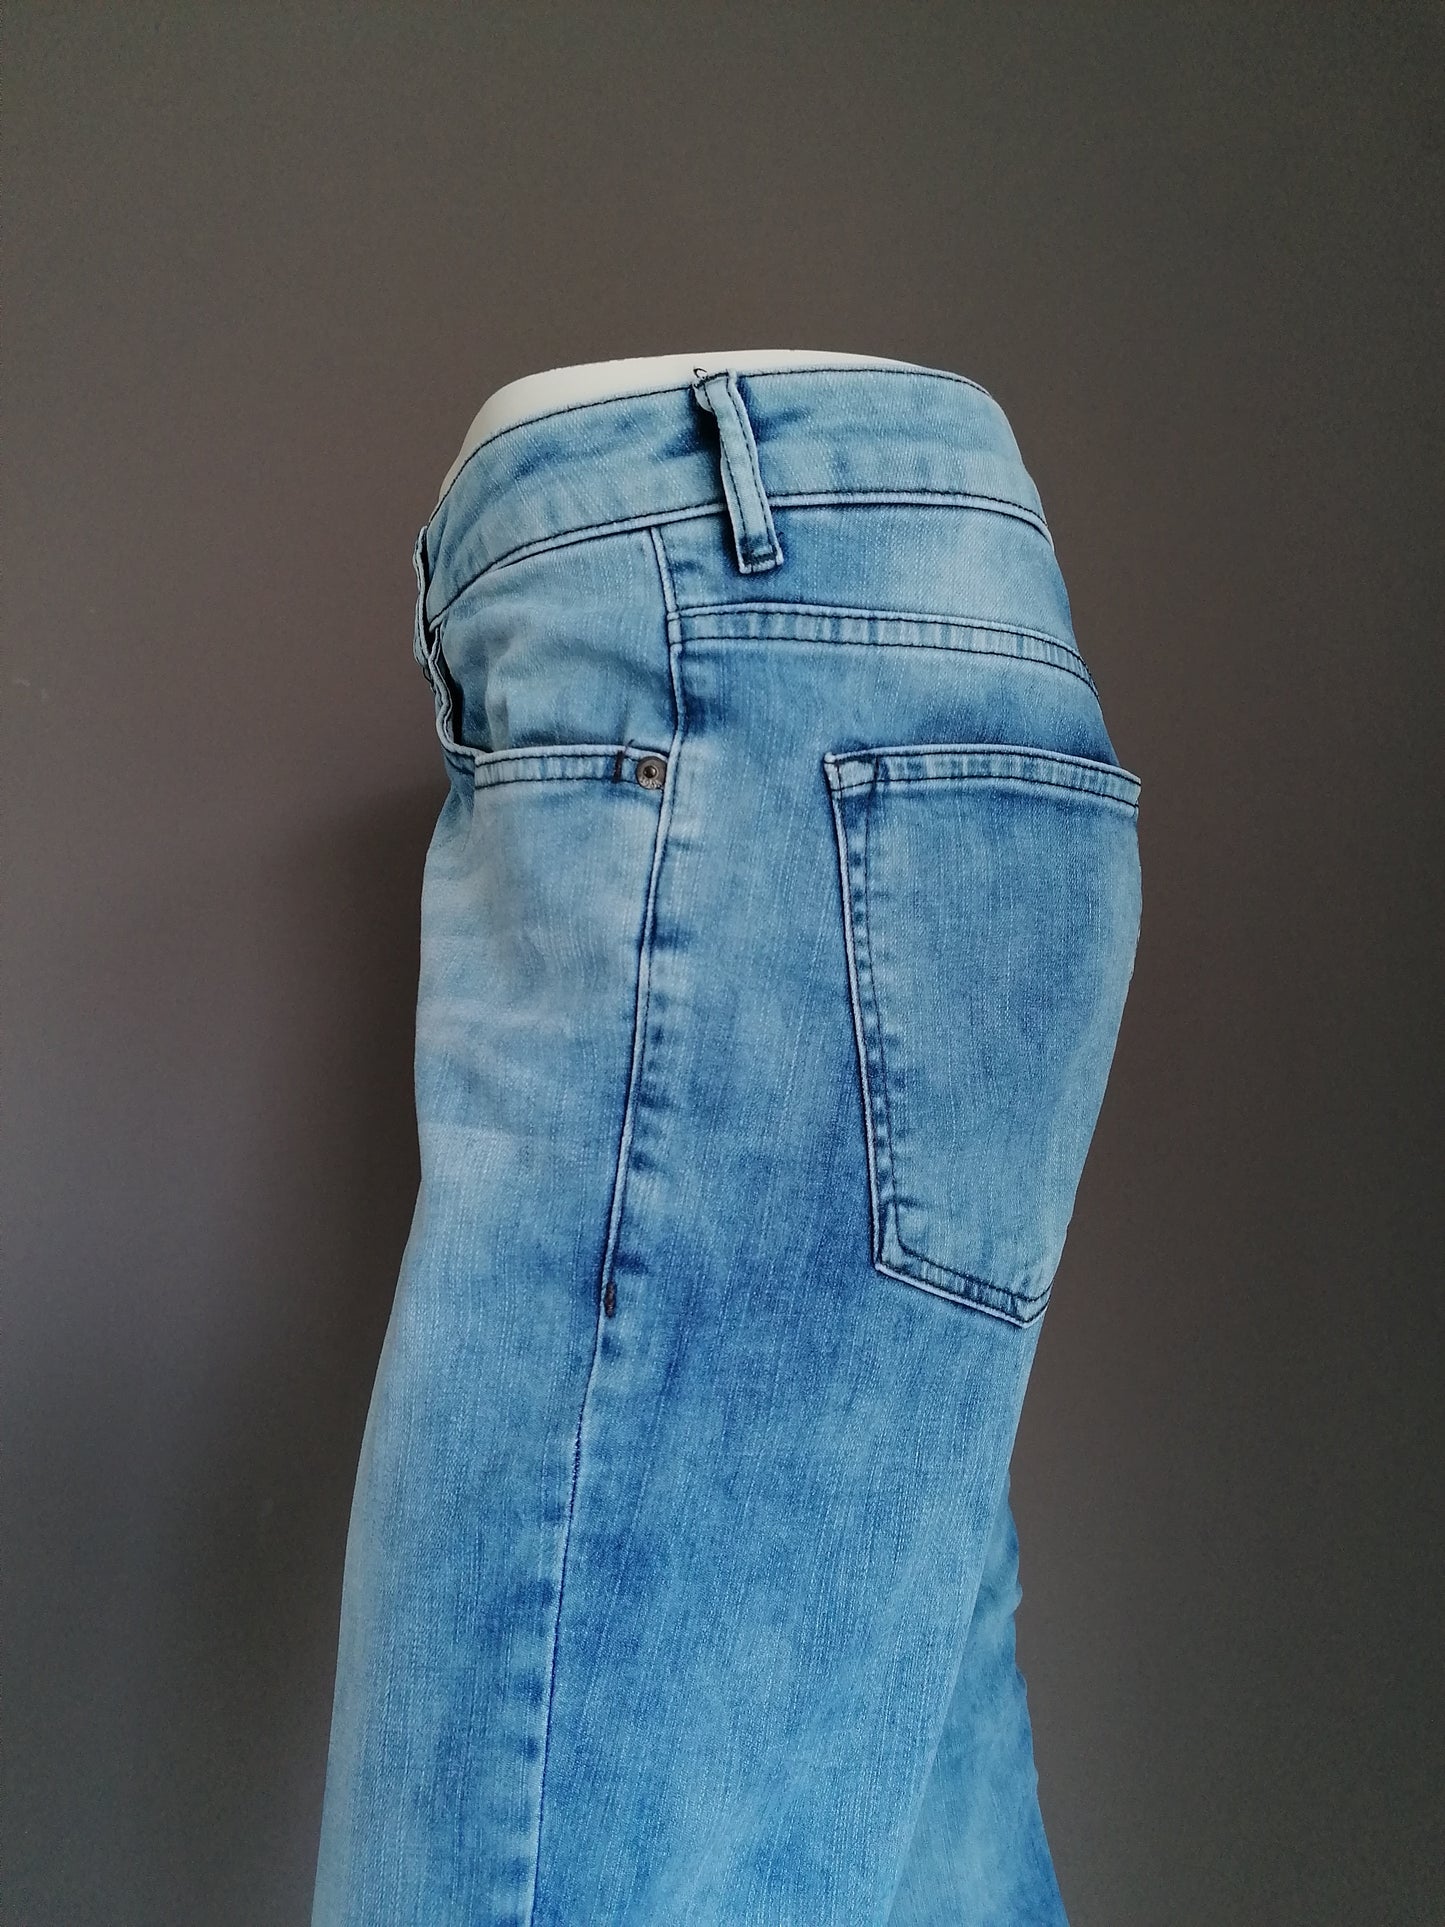 L.C. Waikiki Jeans. Azul claro coloreado. Tamaño W31-L 7/8. Los pantalones se han acortado